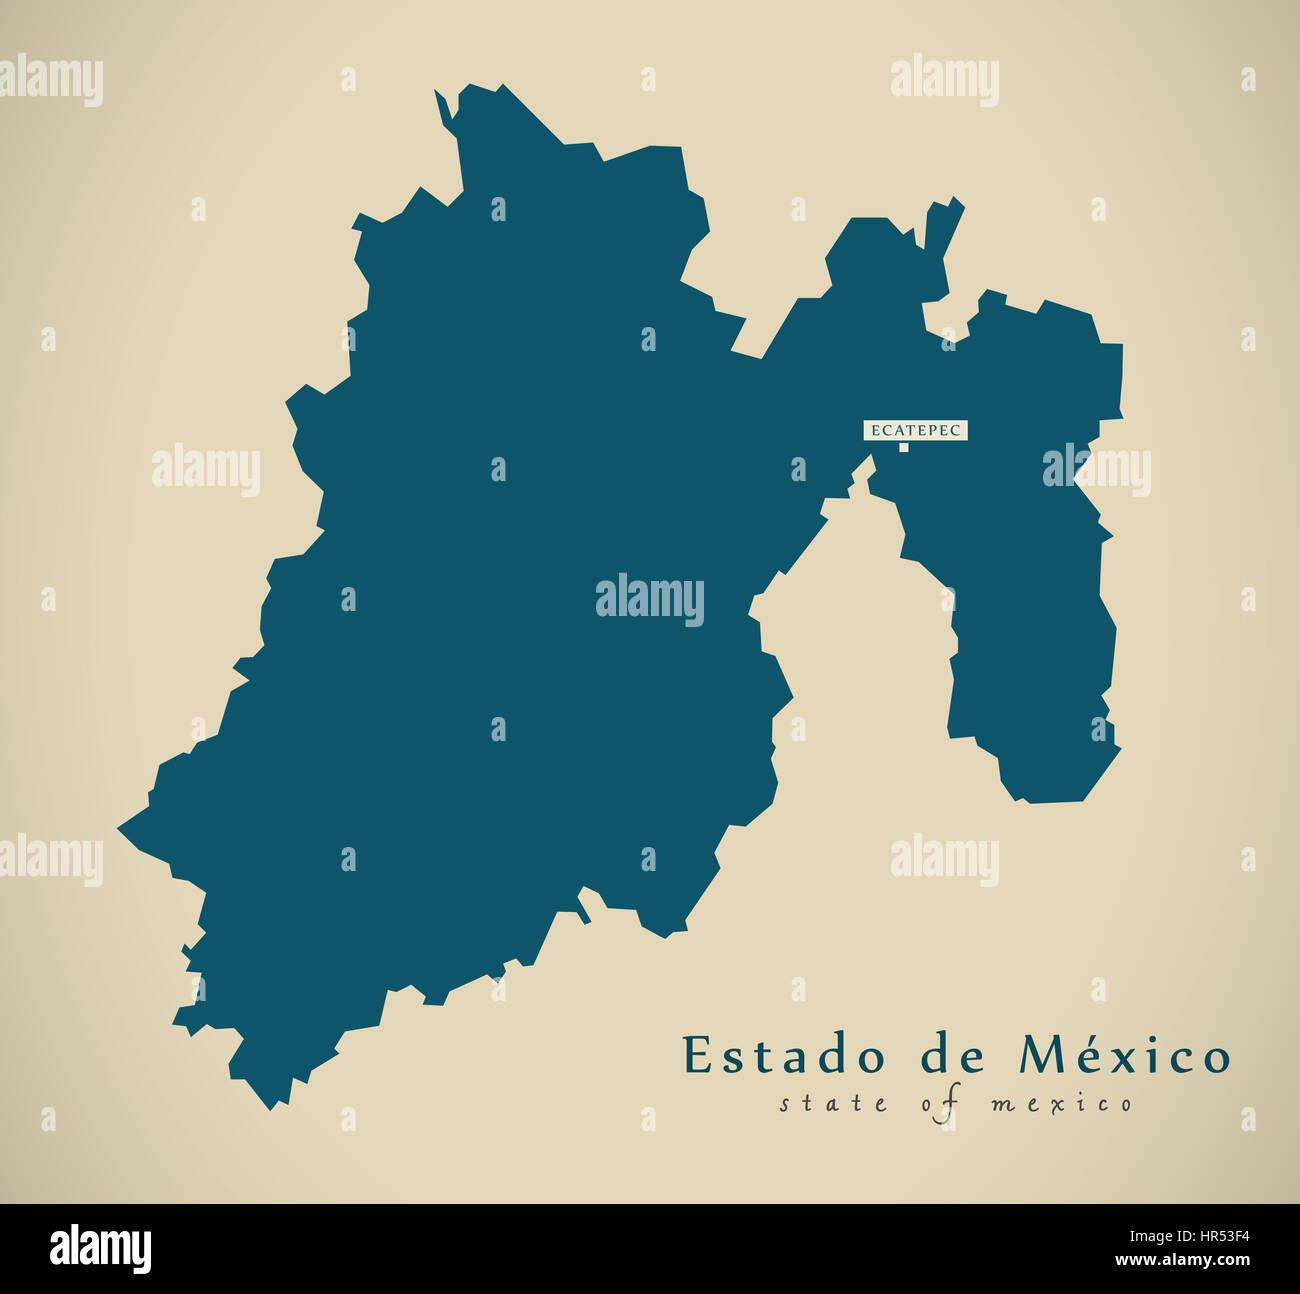 Modern Map - Estado de Mexico Mexico MX illustration Stock Photo